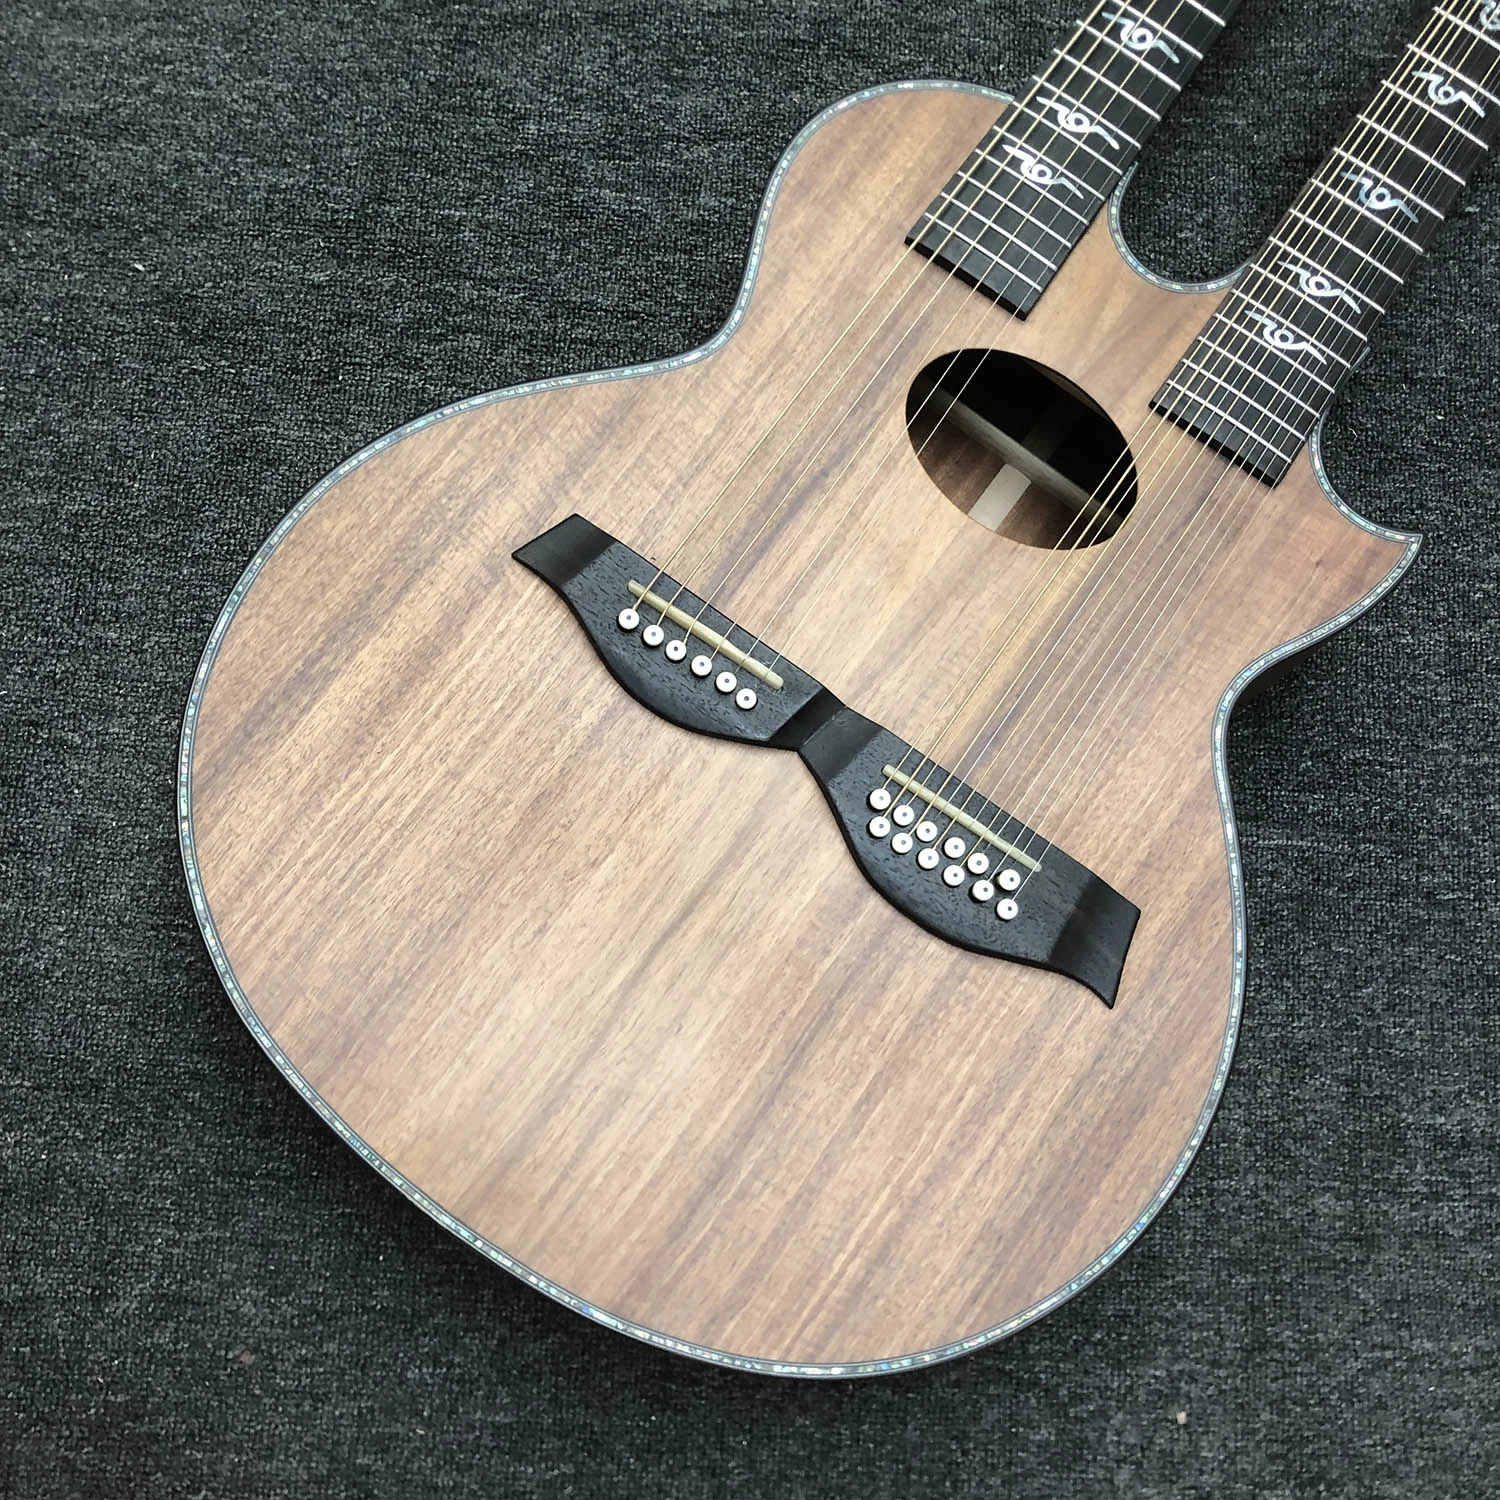 Custom 6+12 строк комфортабельны древесины клена и шеи акустическая гитара матовой отделки Fingerboard дерева